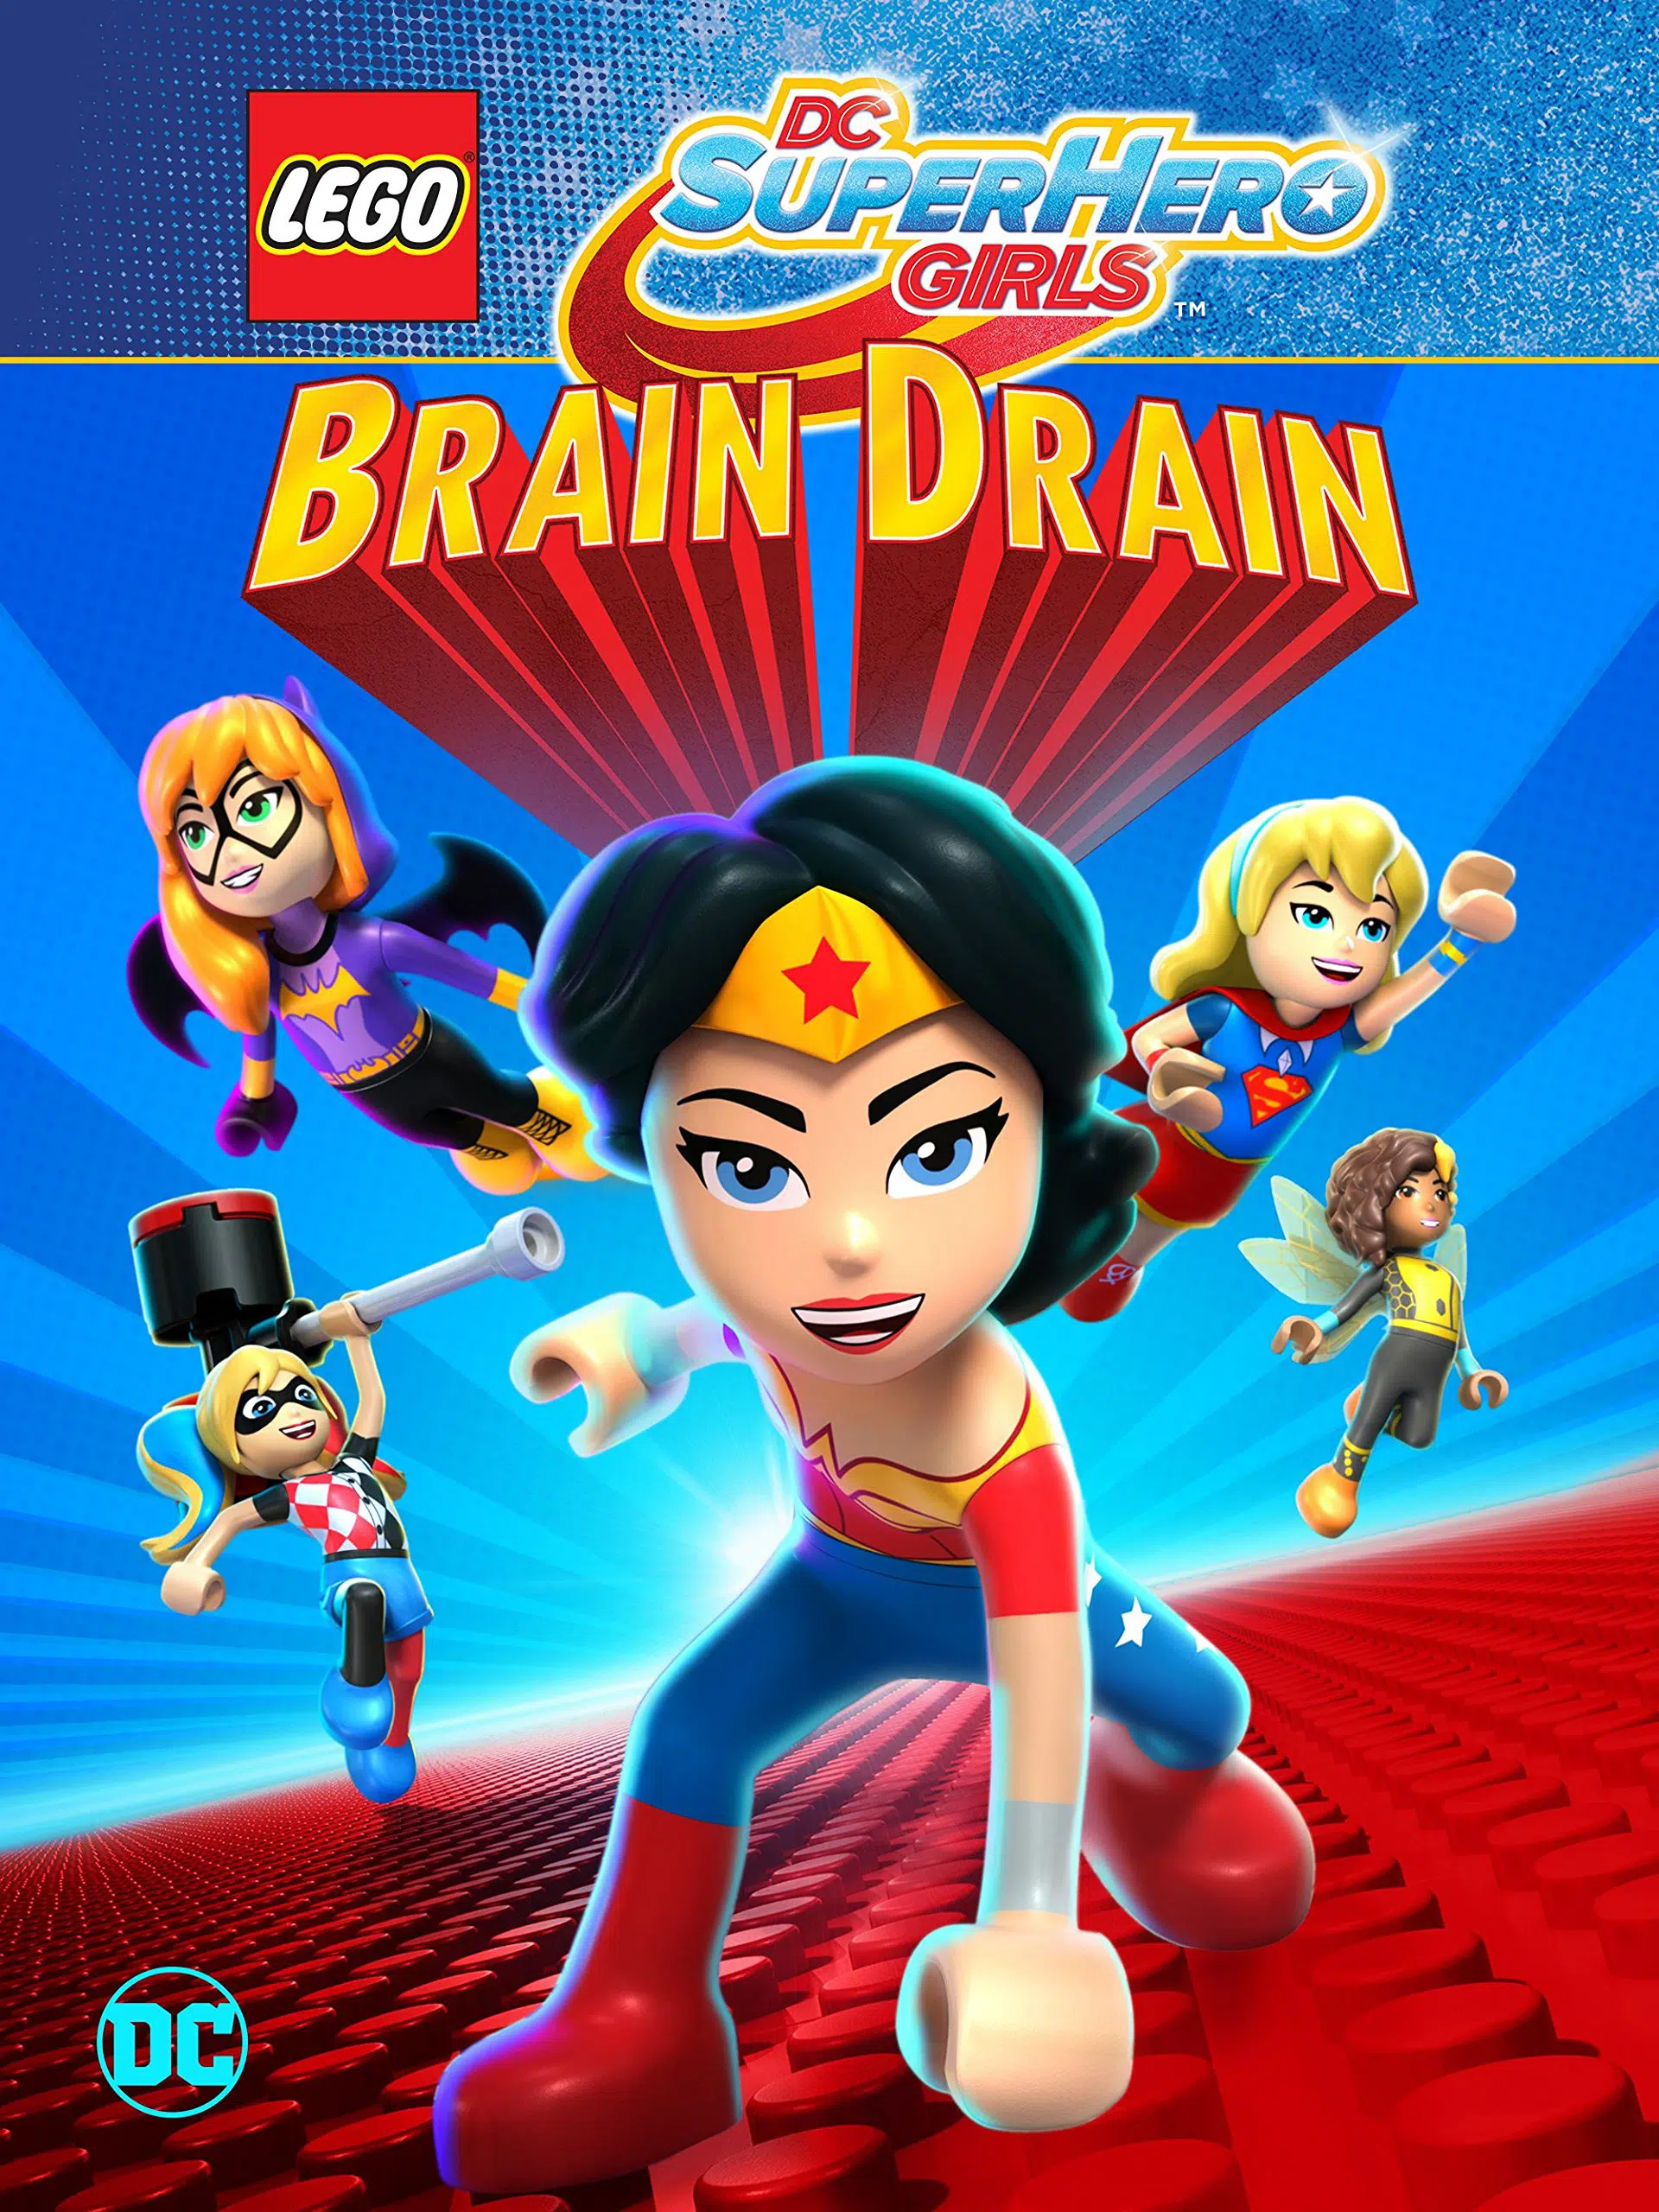 ดูหนังออนไลน์ LEGO DC SUPER HERO GIRLS BRAIN DRAIN เลโก้ แก๊งค์สาว ดีซีซูเปอร์ฮีโร่ ทลายแผนล้างสมองครองโลก